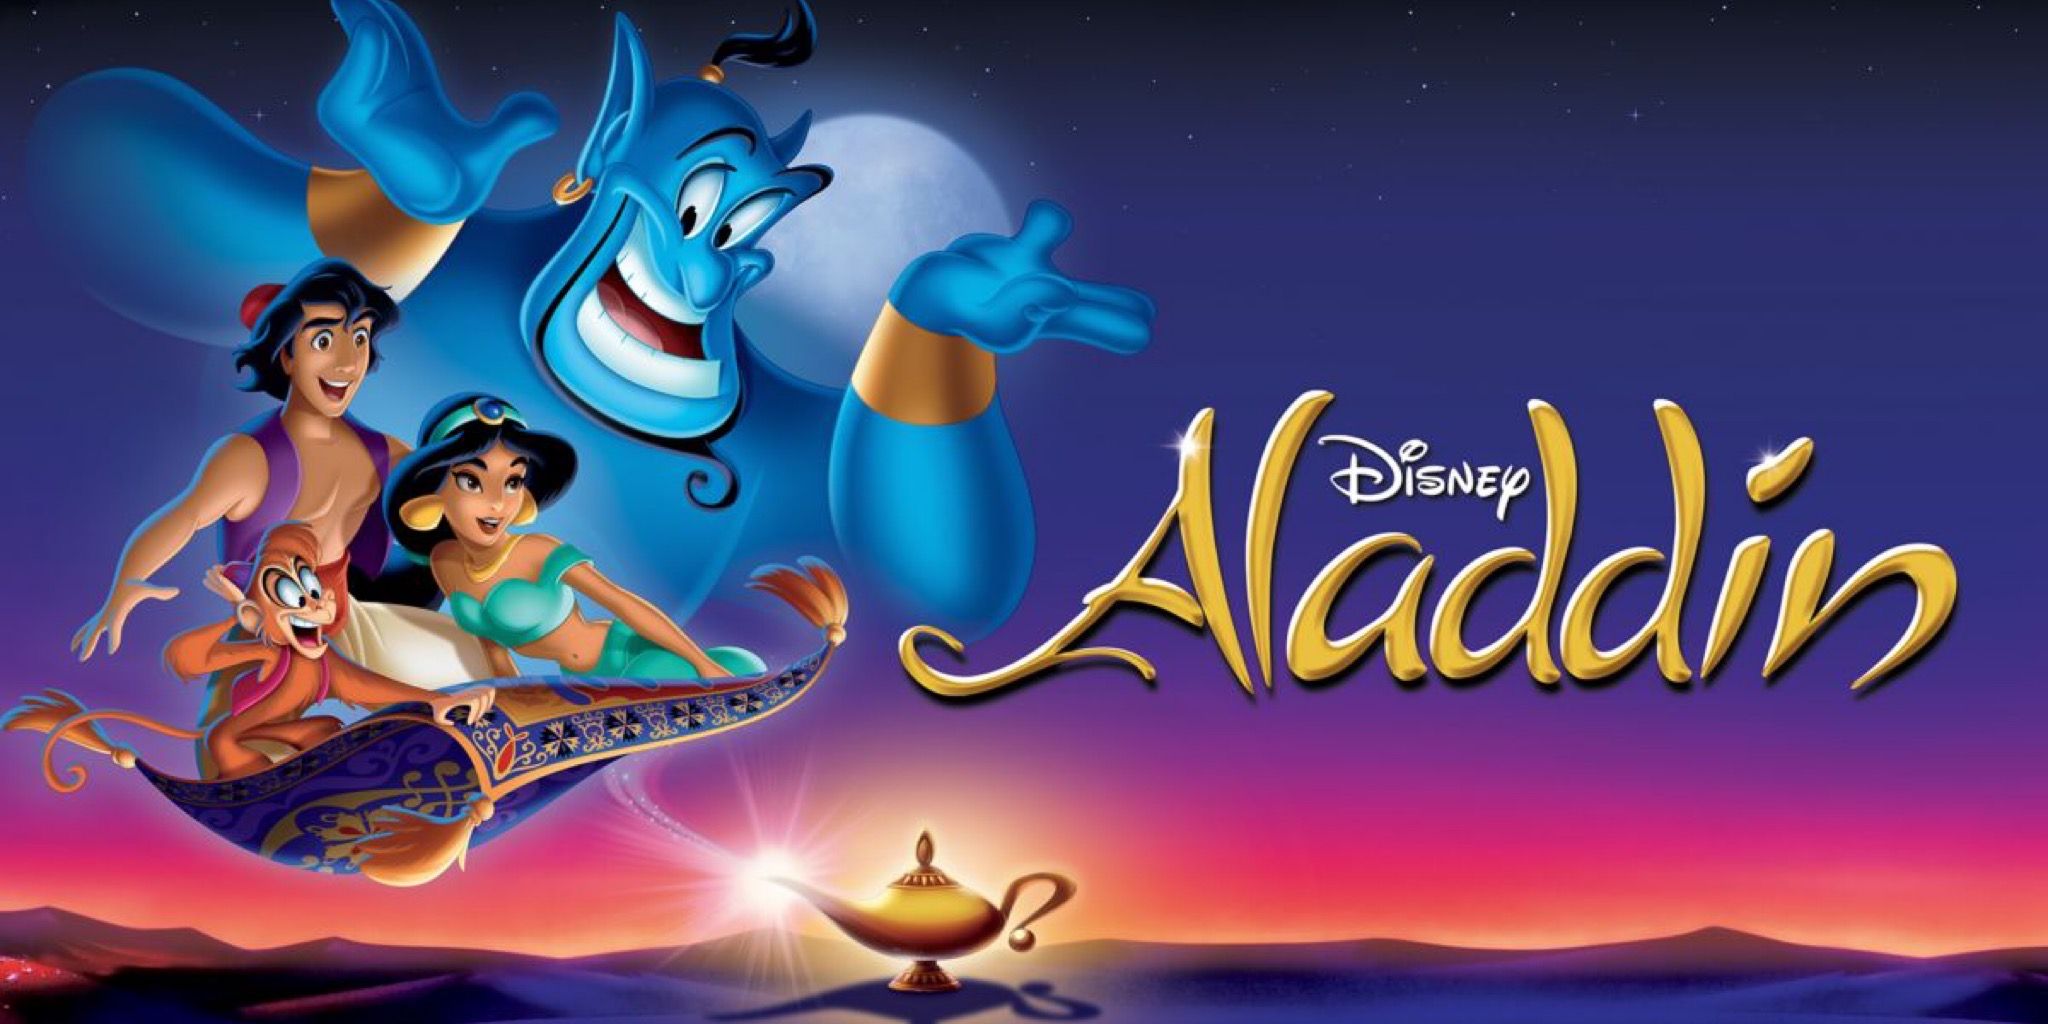 Affiche voor Aladdin (1992)